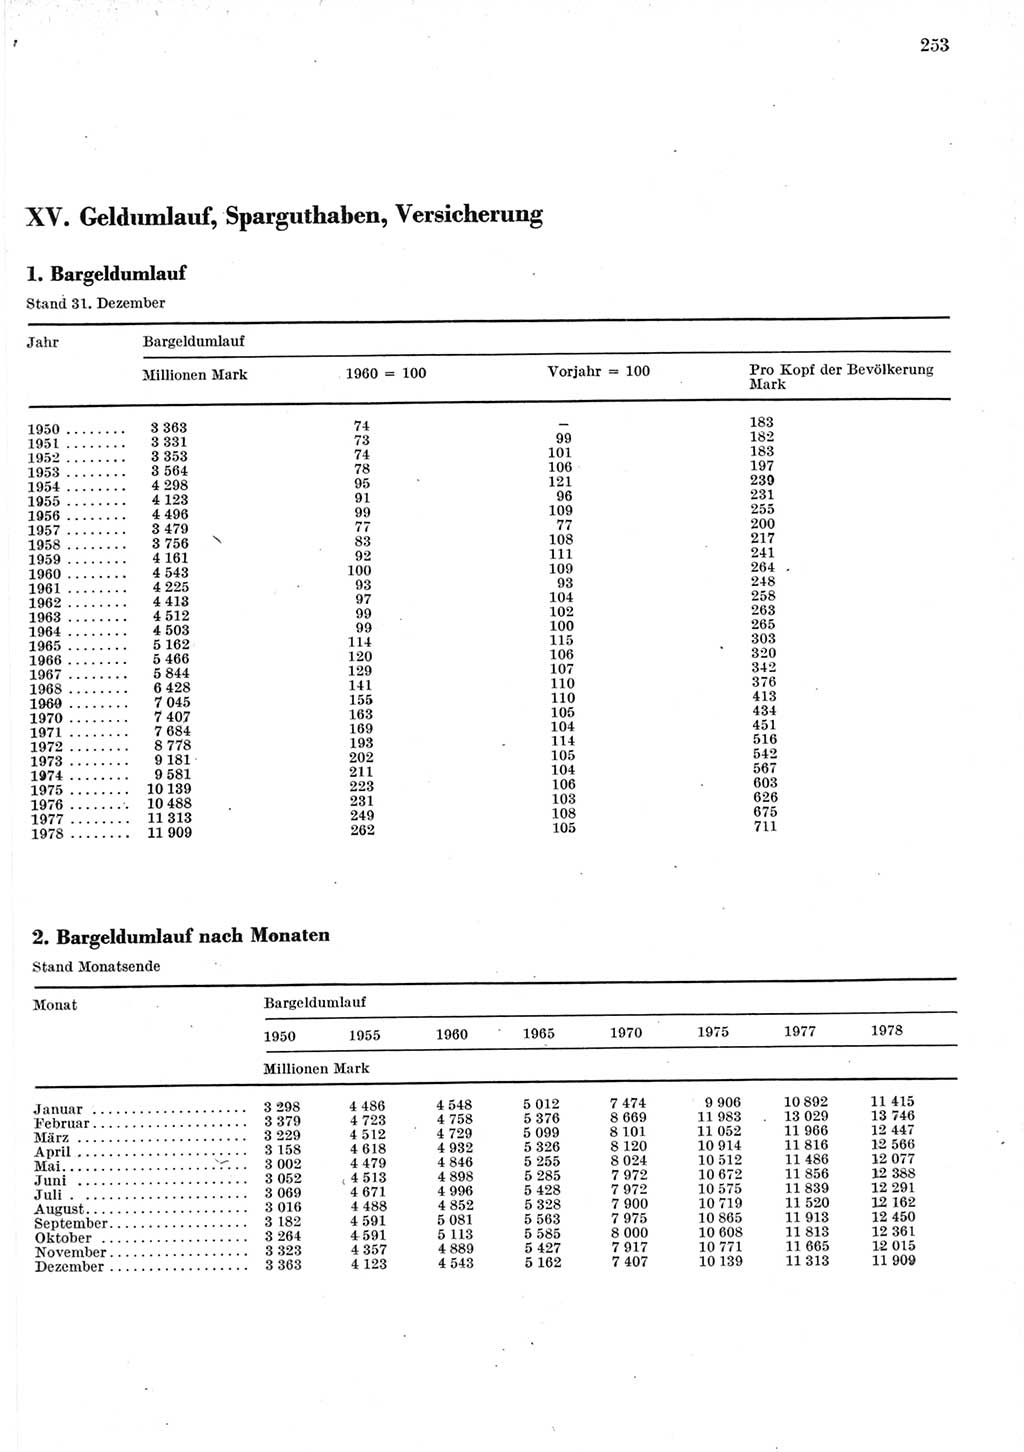 Statistisches Jahrbuch der Deutschen Demokratischen Republik (DDR) 1979, Seite 253 (Stat. Jb. DDR 1979, S. 253)